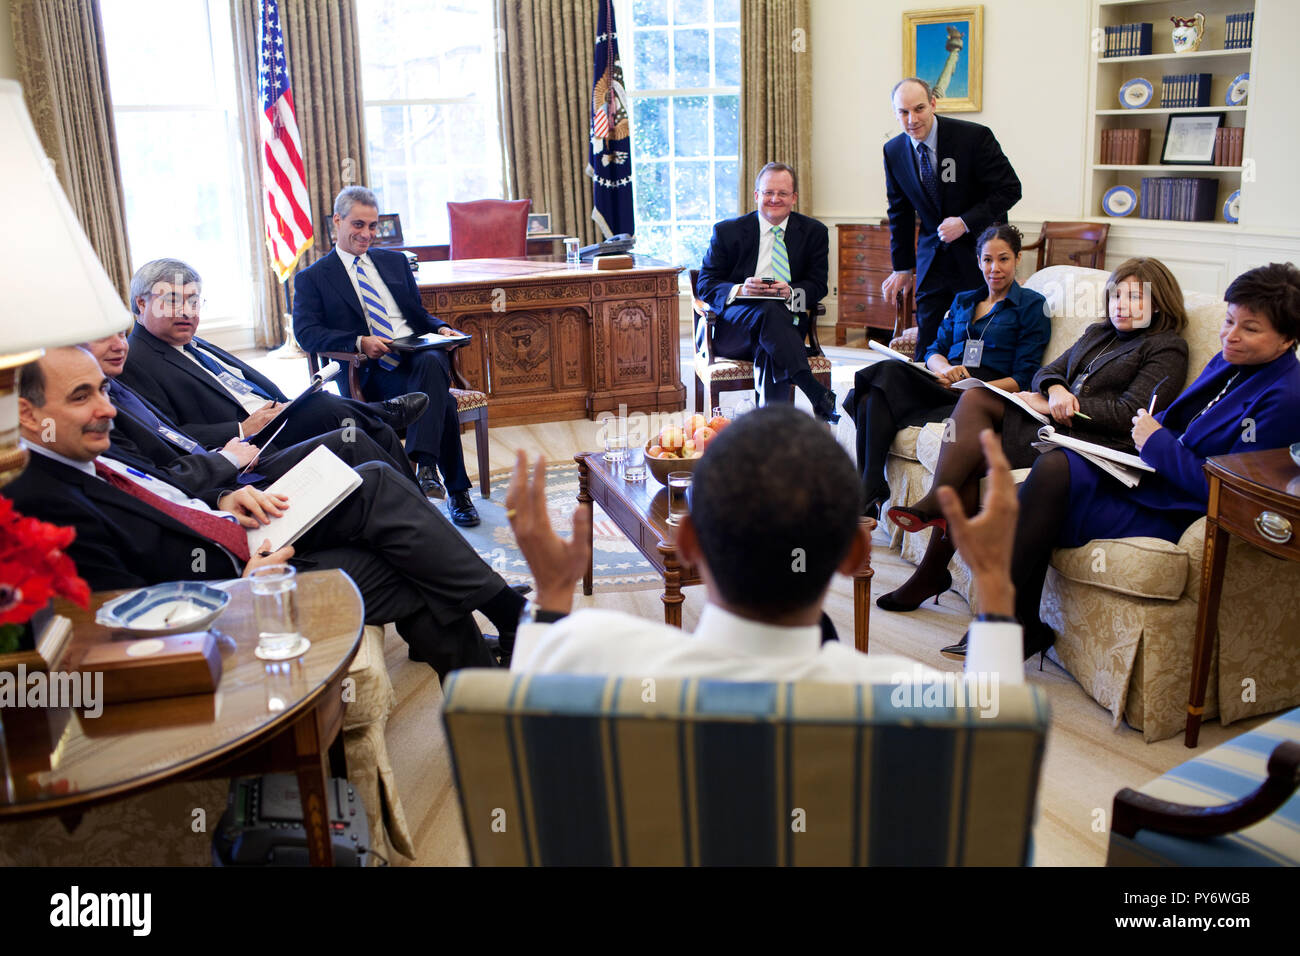 Le président Barack Obama rencontre les conseillers senior dans le bureau ovale. 2/2/09. Photo Officiel de la Maison Blanche par Pete Souza Banque D'Images